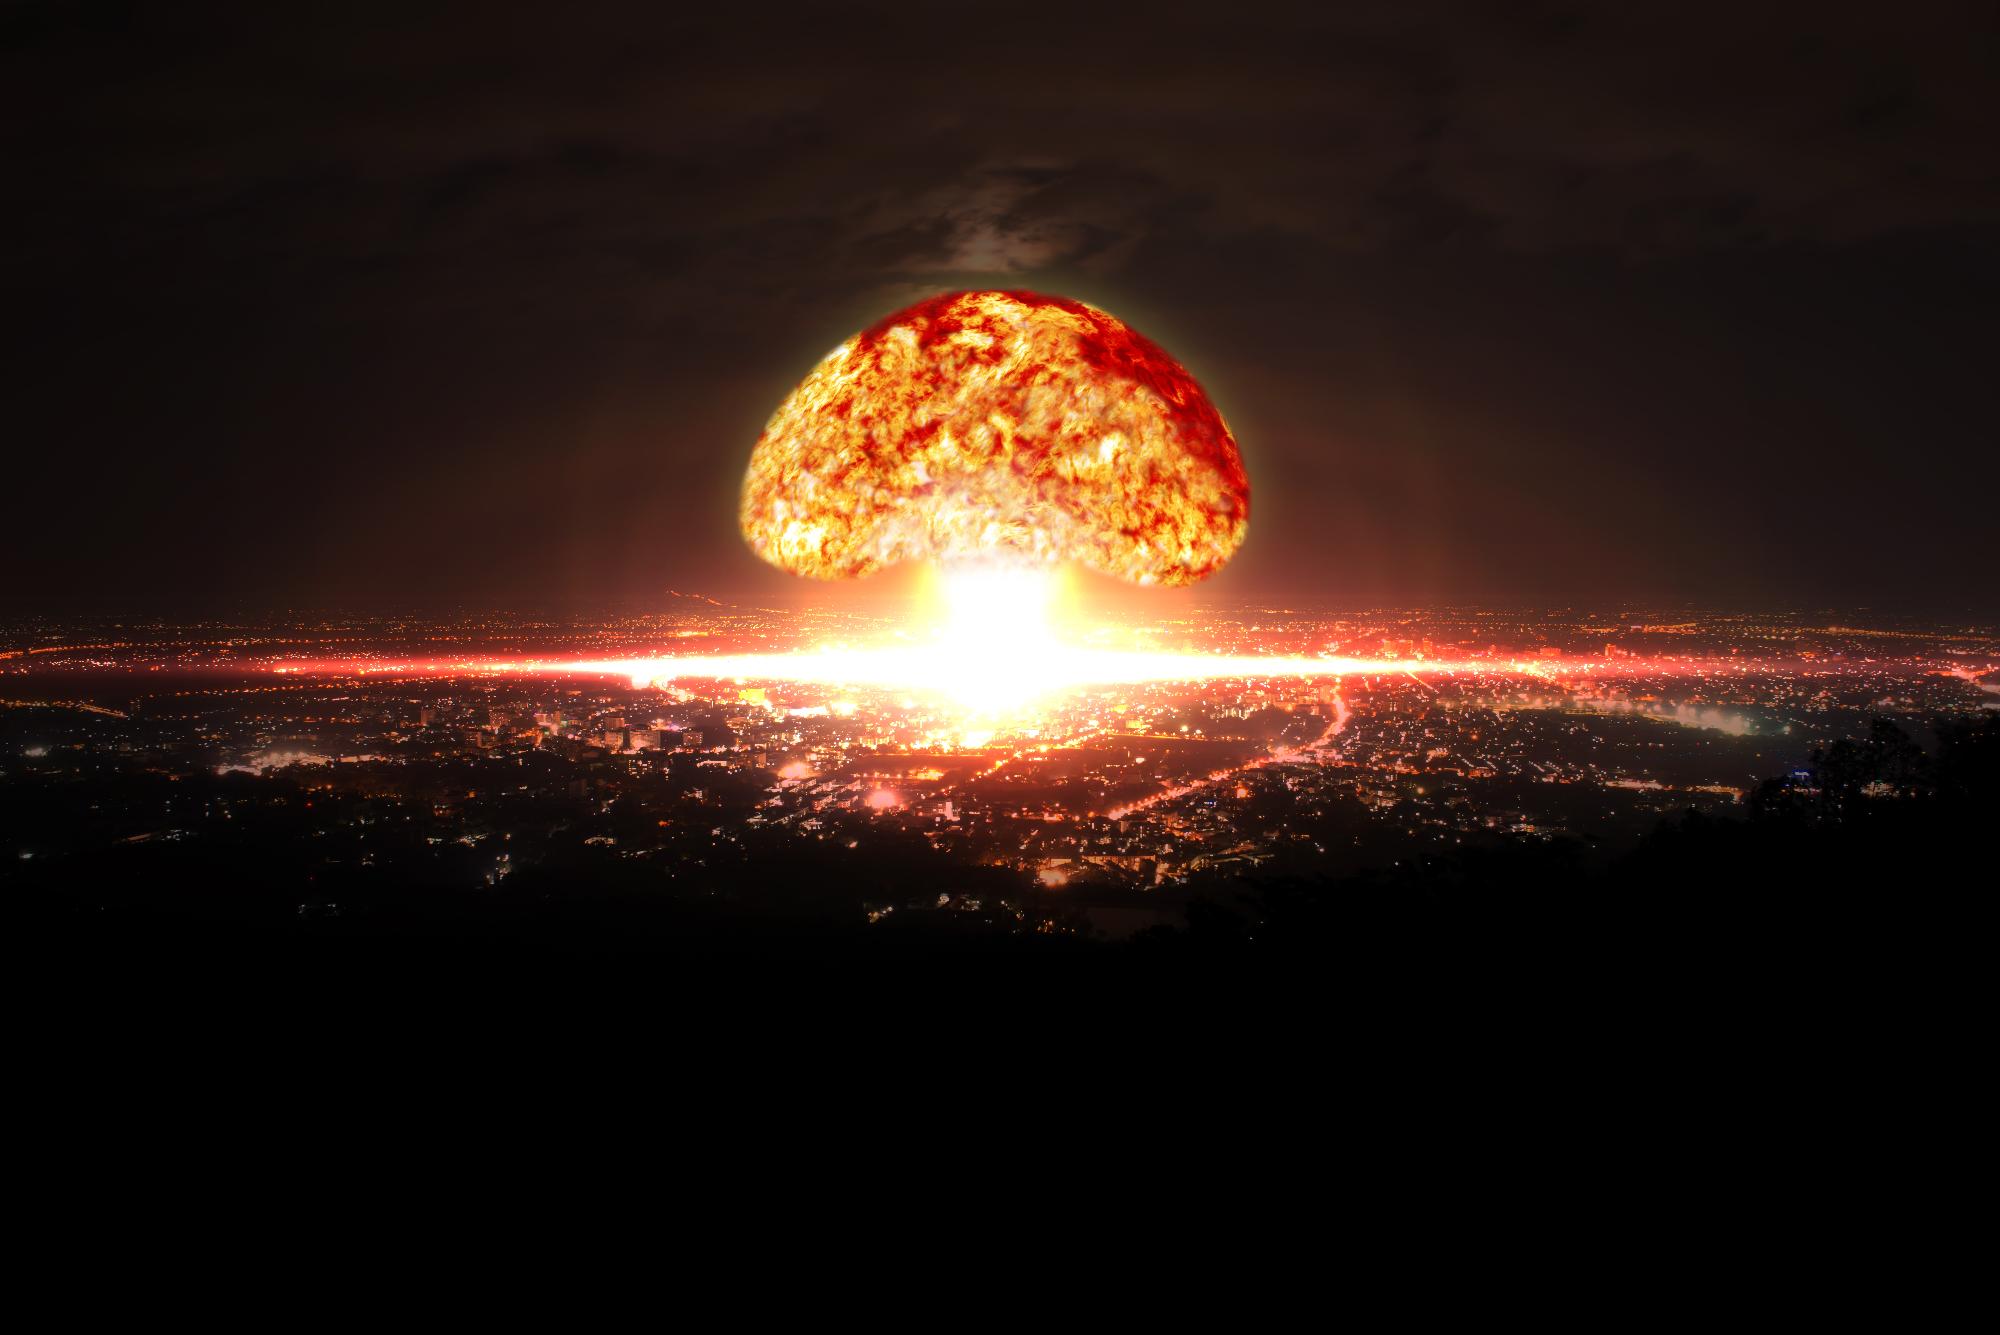 Közösségimédia-oldal indul az egyre fokozódó atomháborús fenyegetés ellen